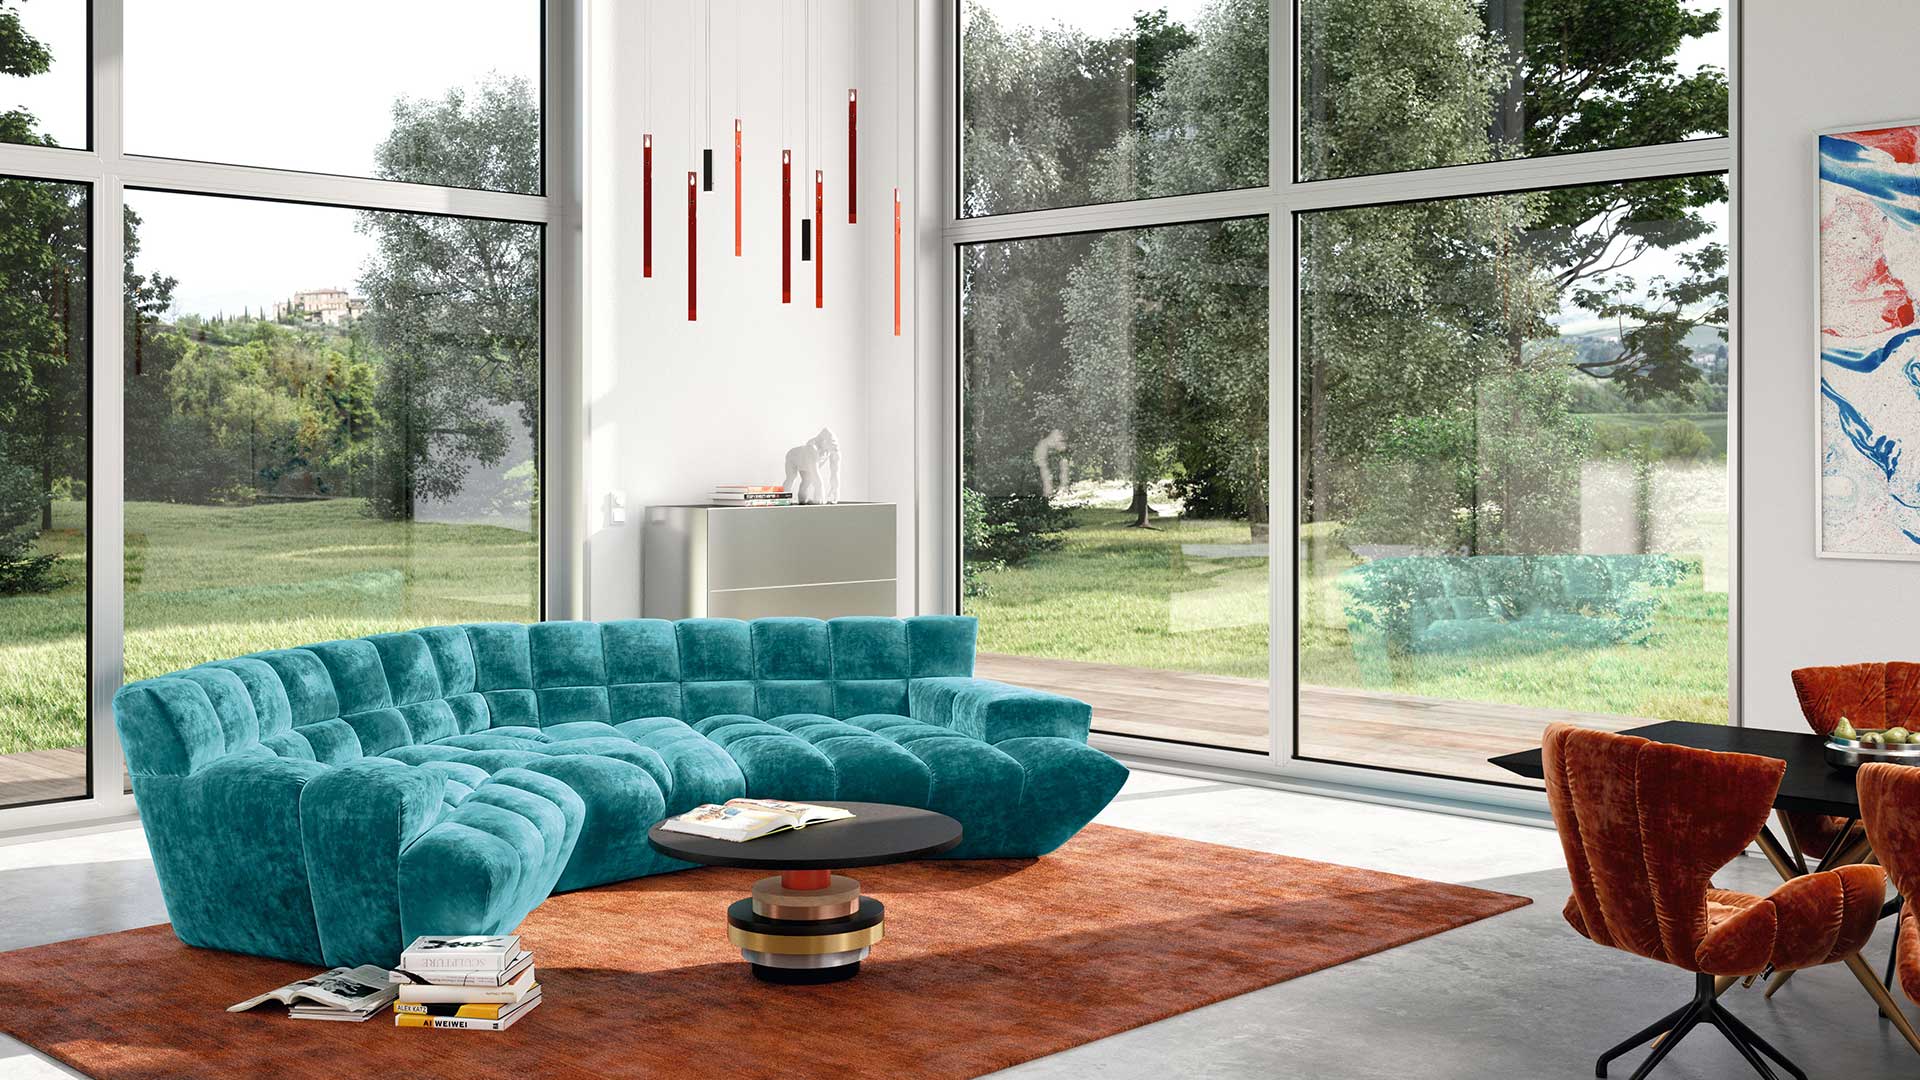 Bretz Cloud 7 Sofa in türkisem Velours auf orangem Teppich in einem modernen Wohnzimmer mit Fensterfront.